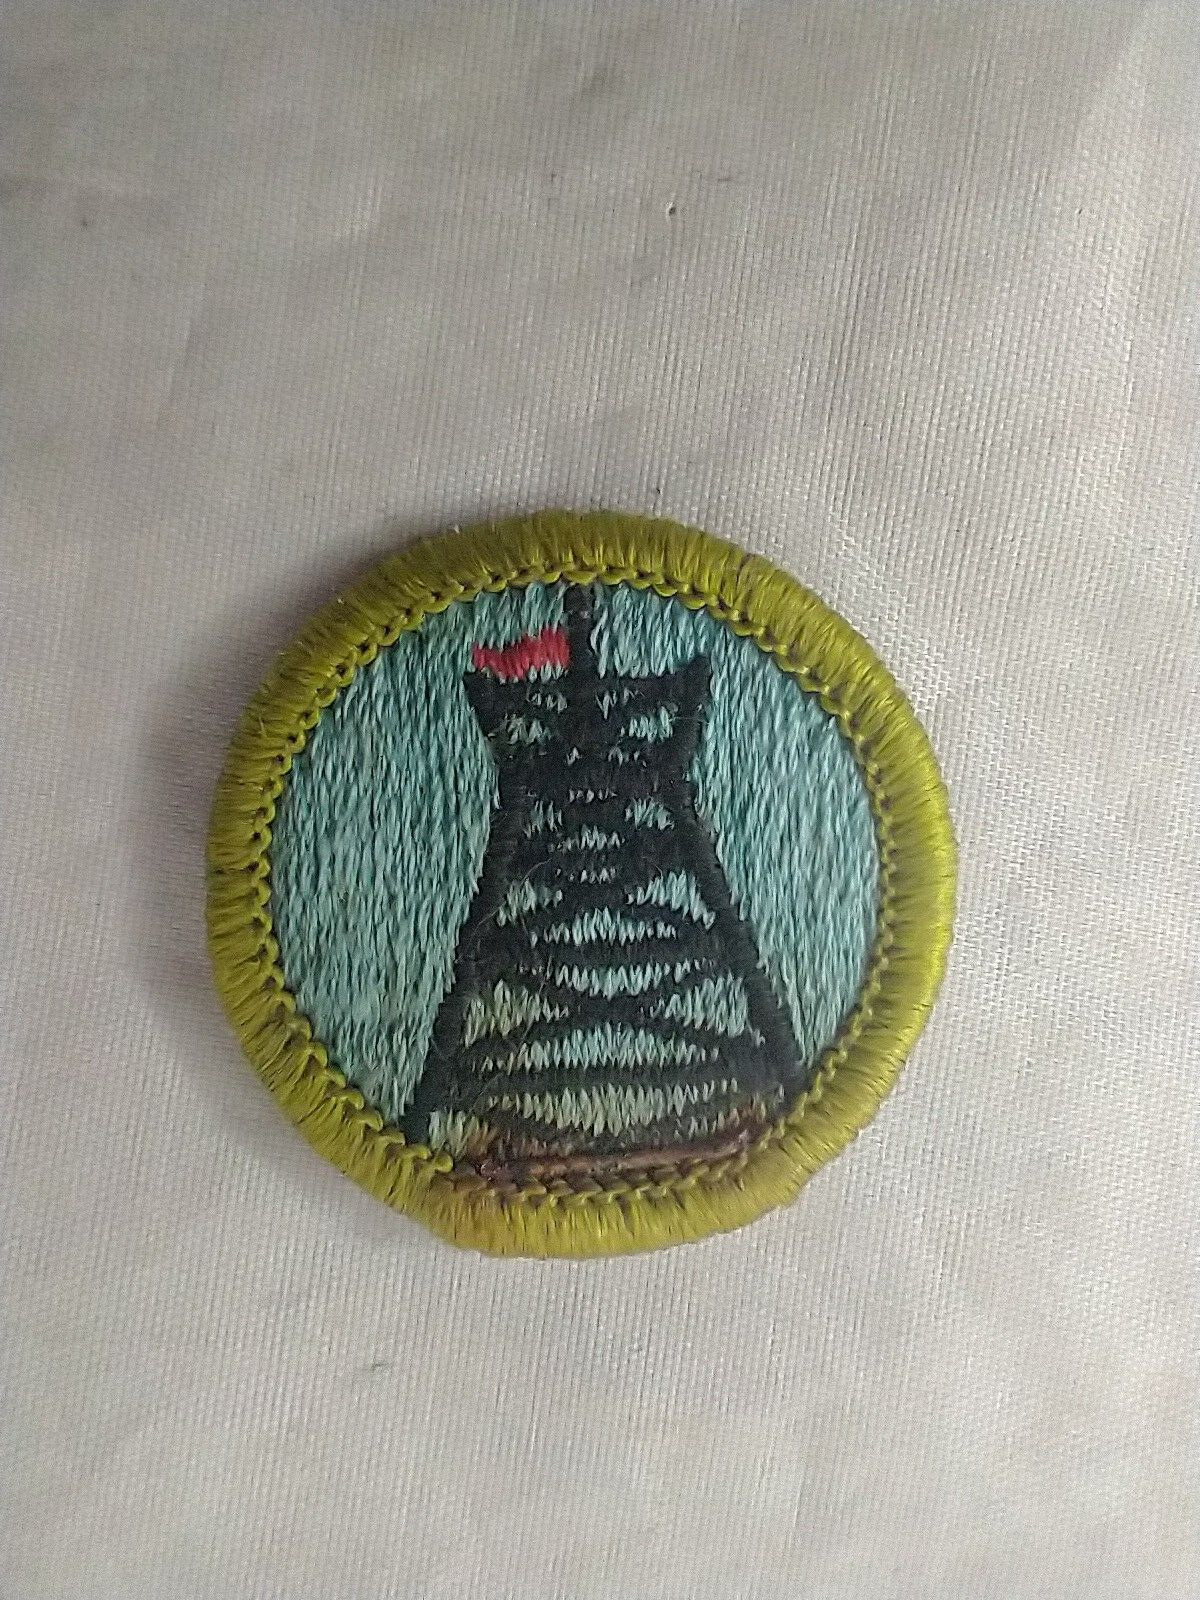 Vintage Pioneering Boy Scout BSA Merit Badge Patch